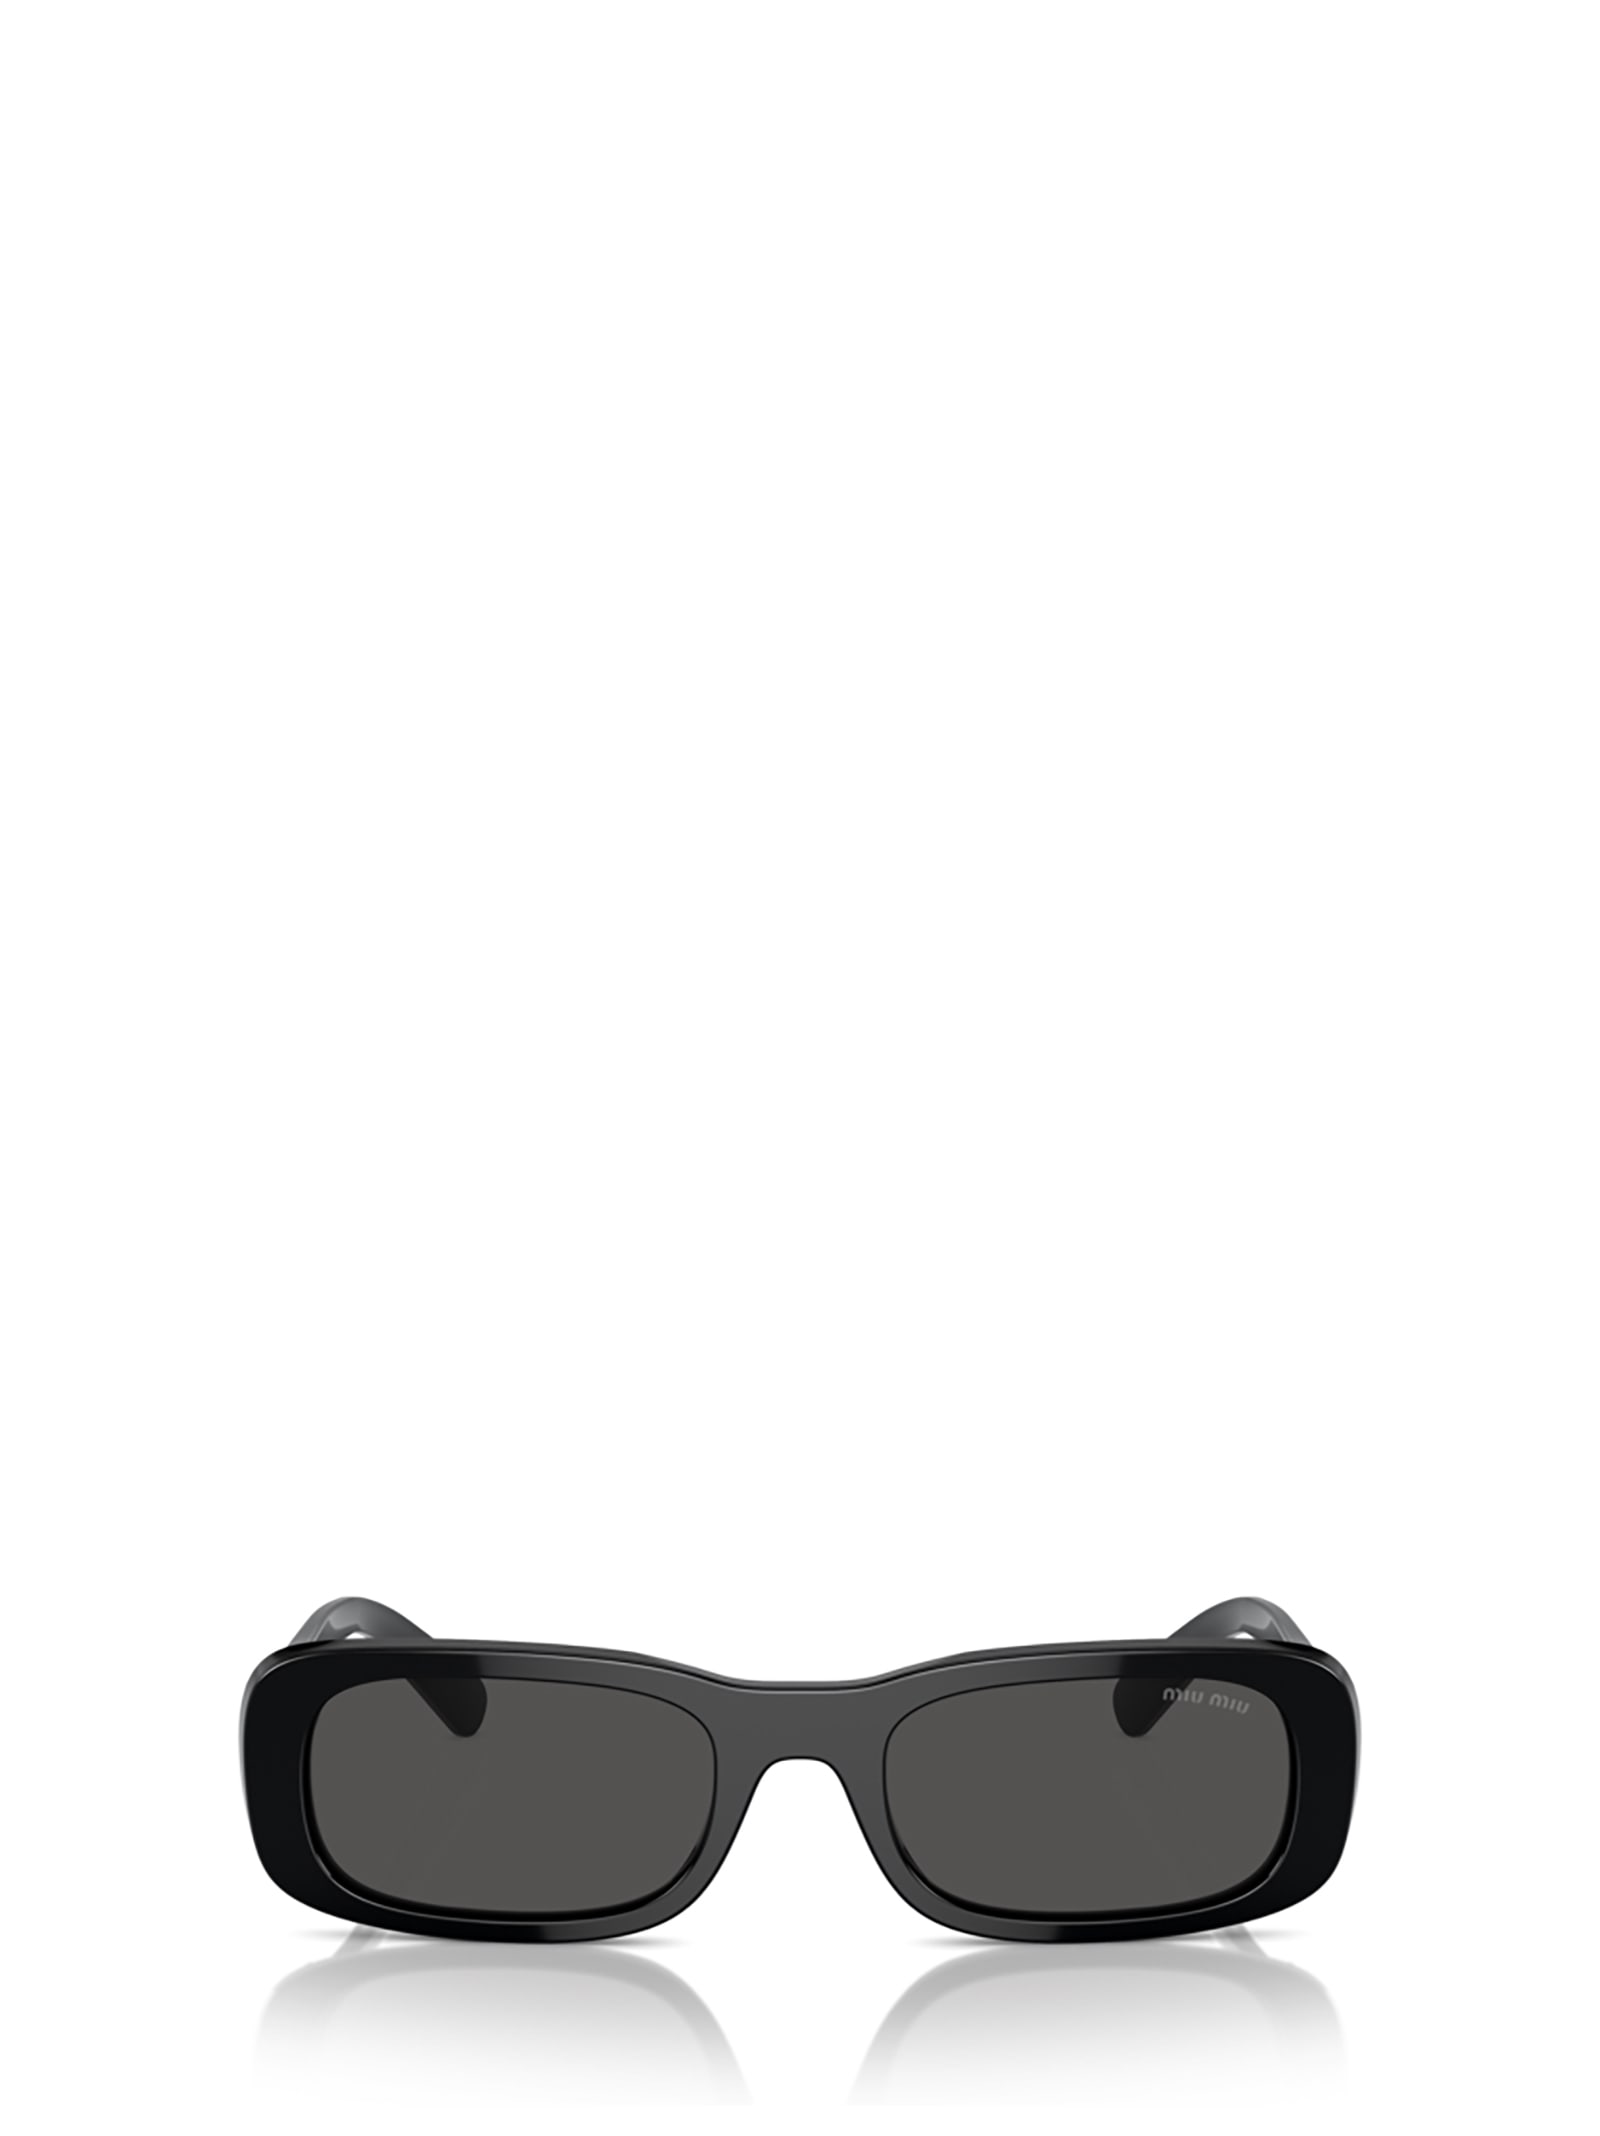 Mu 08zs Black Sunglasses